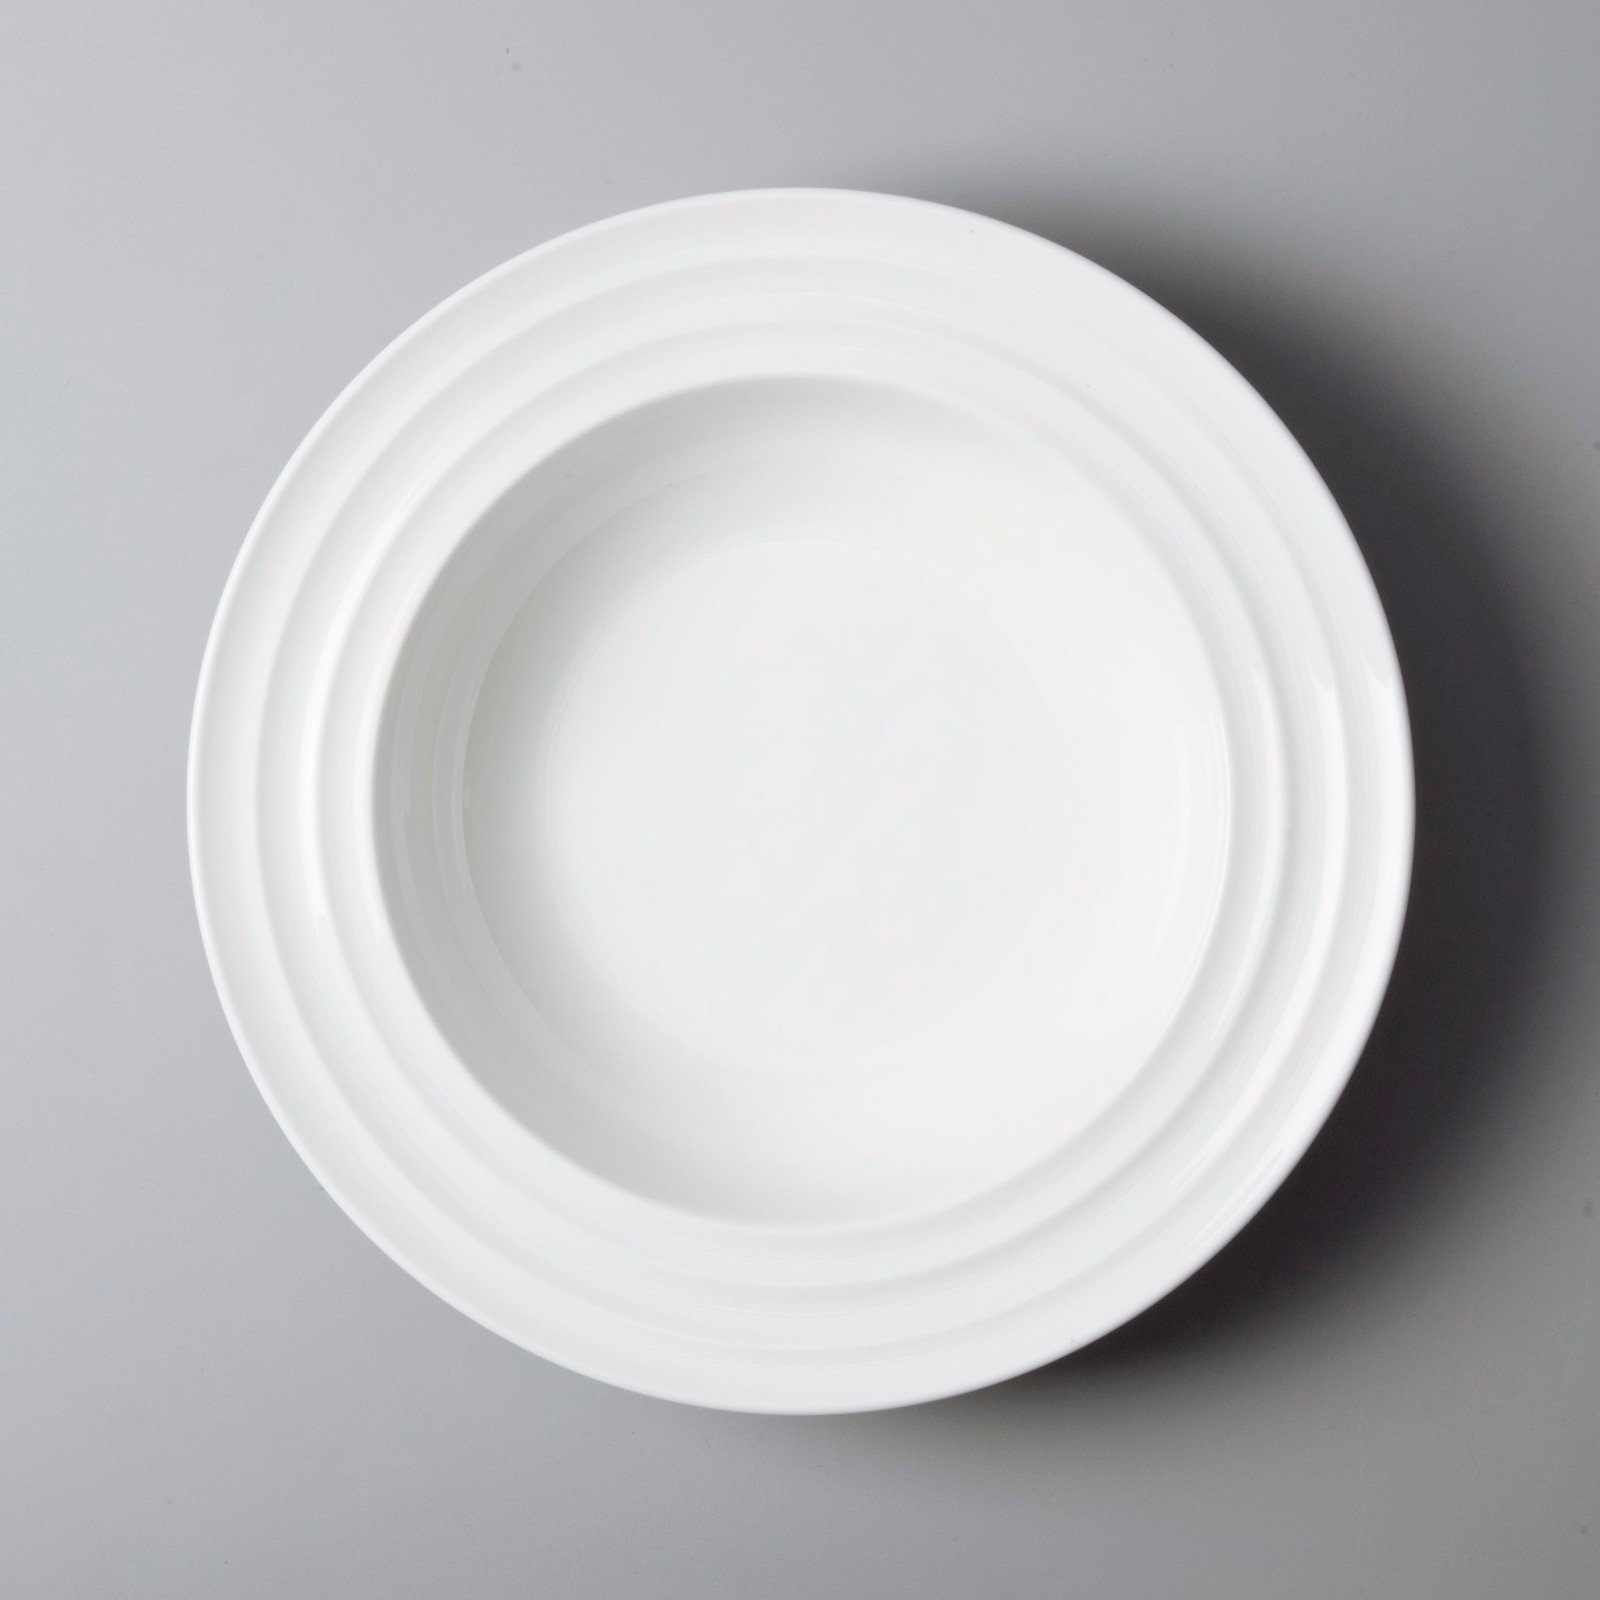 Italian style commercial restaurant plates manufacturer for restaurant-4